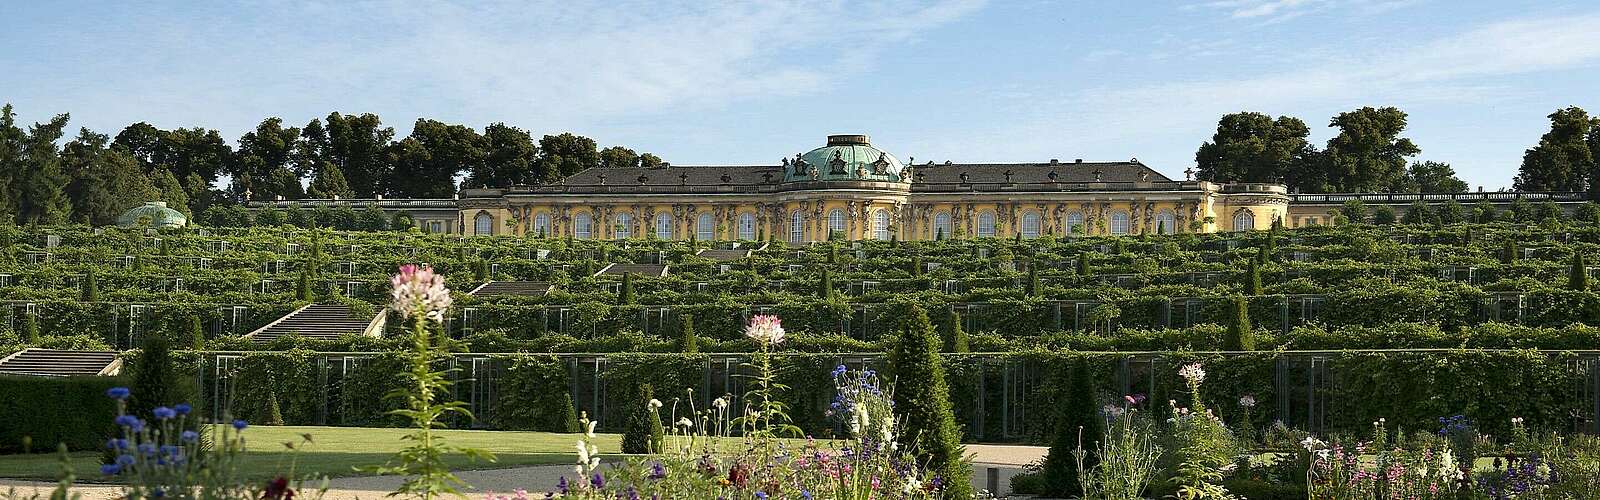 Blick auf Schloss Sanssouci,
        
    

        Foto: TMB Tourismus-Marketing Brandenburg GmbH und SPSG/Leo Seidel